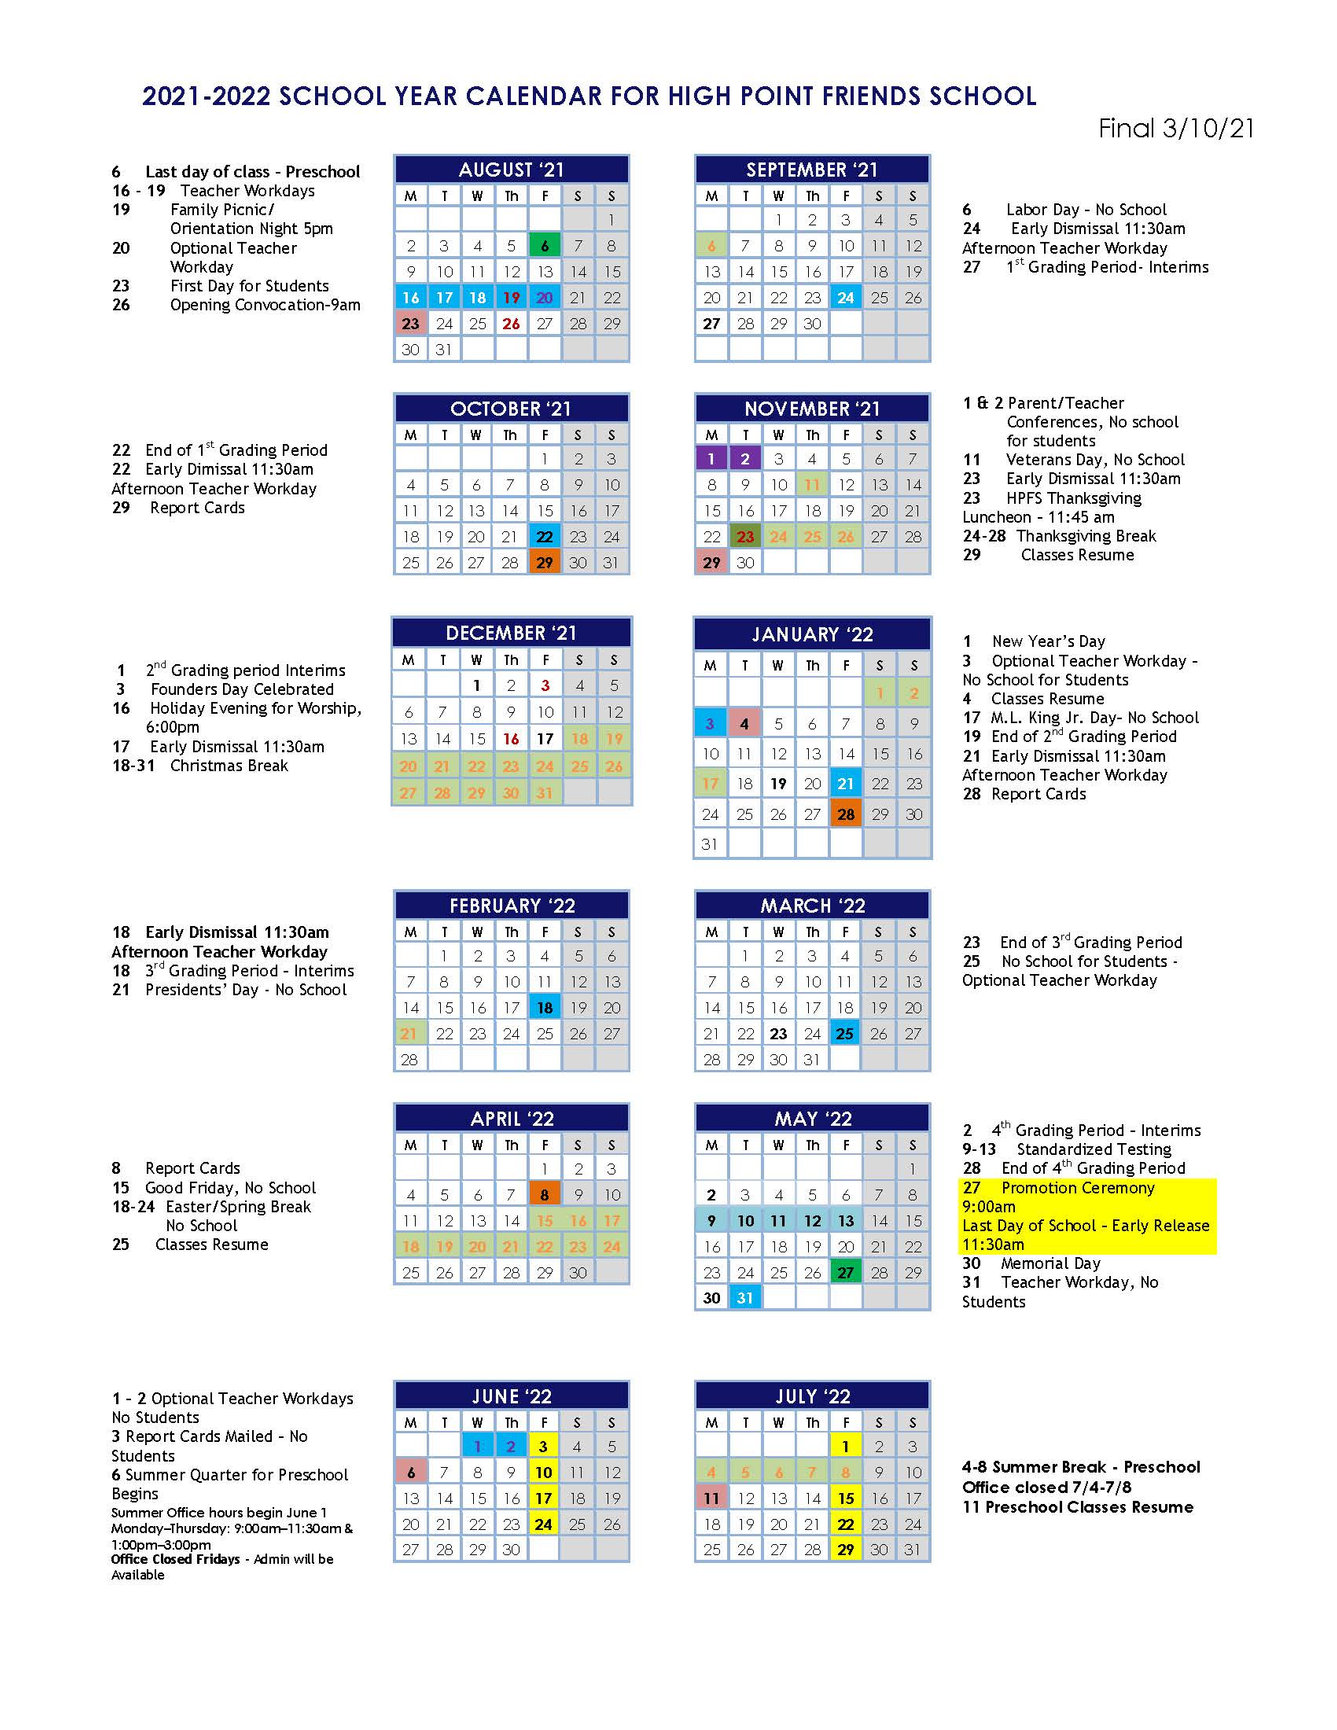 Fall 2022 Uncg Calendar 2021-2022 Calendar - High Point Friends School